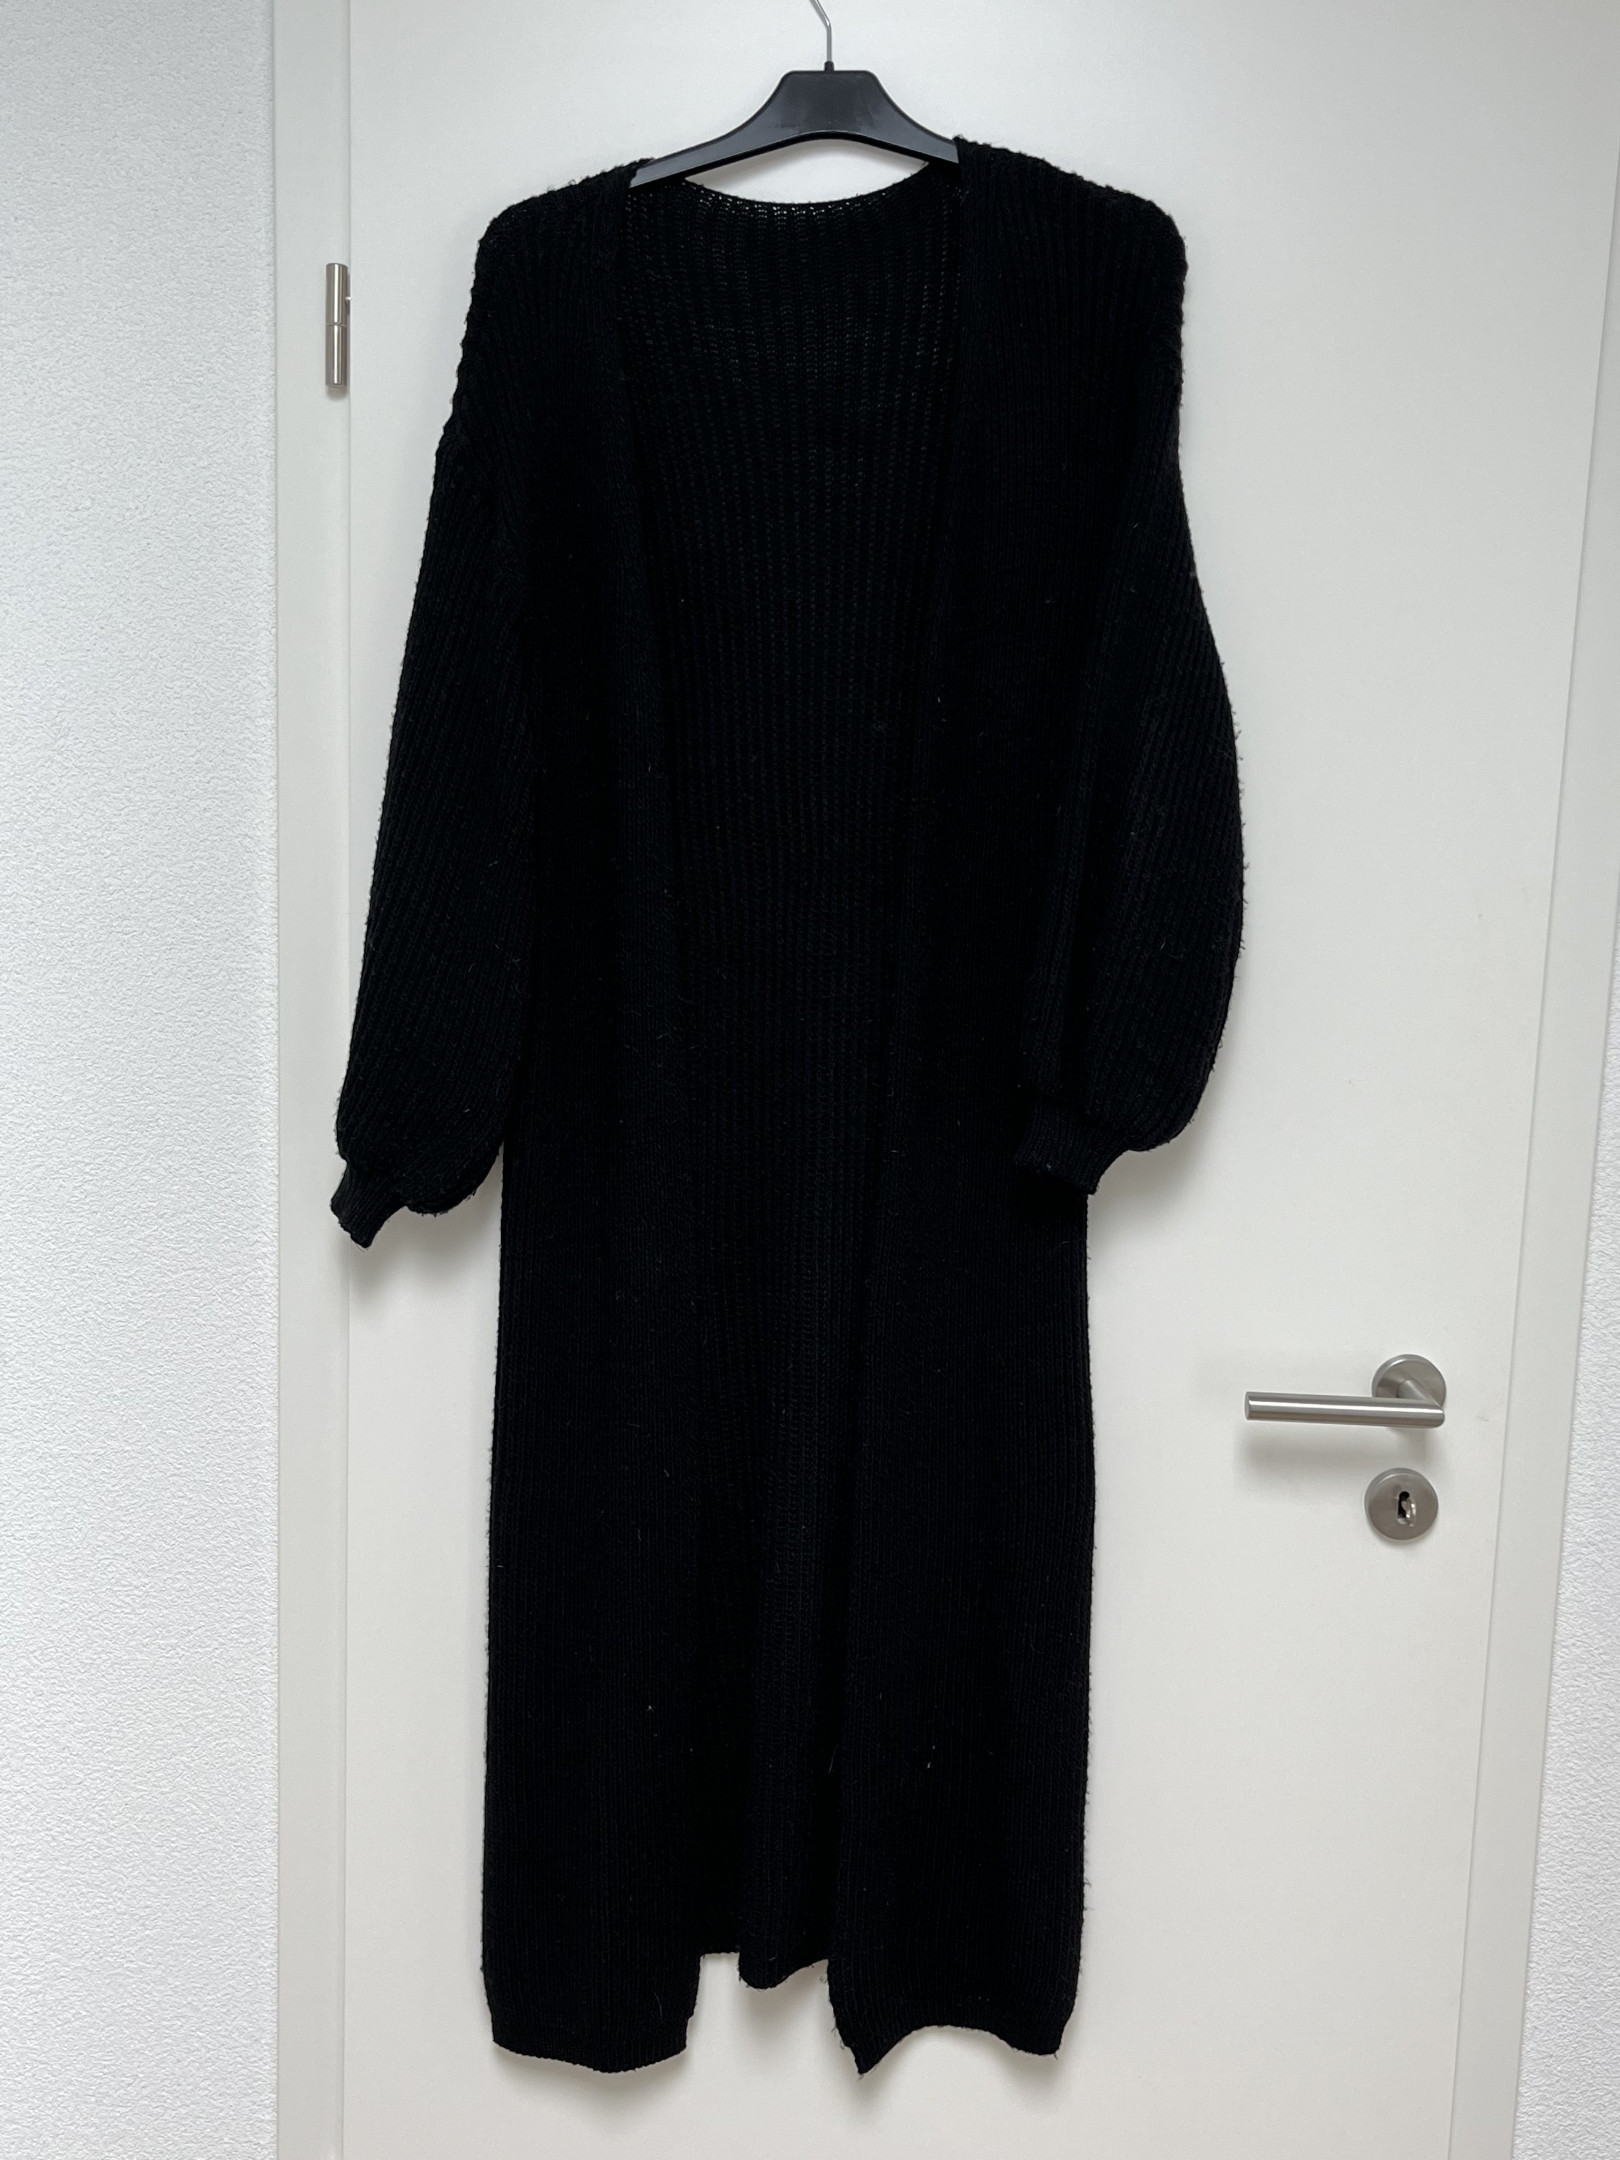 Black long waistcoat